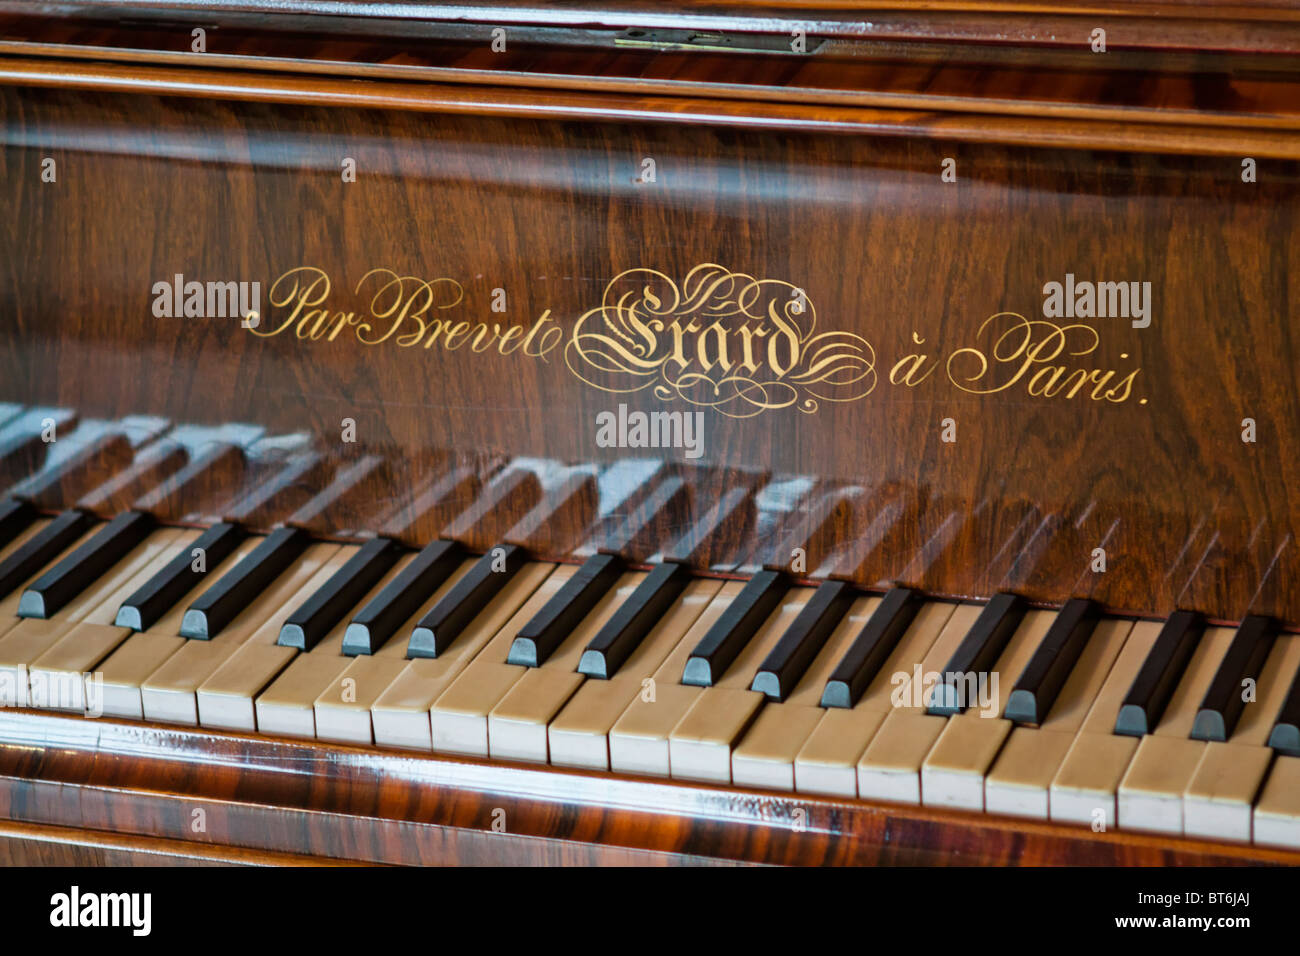 Erard piano, Amboise palace, France Stock Photo - Alamy